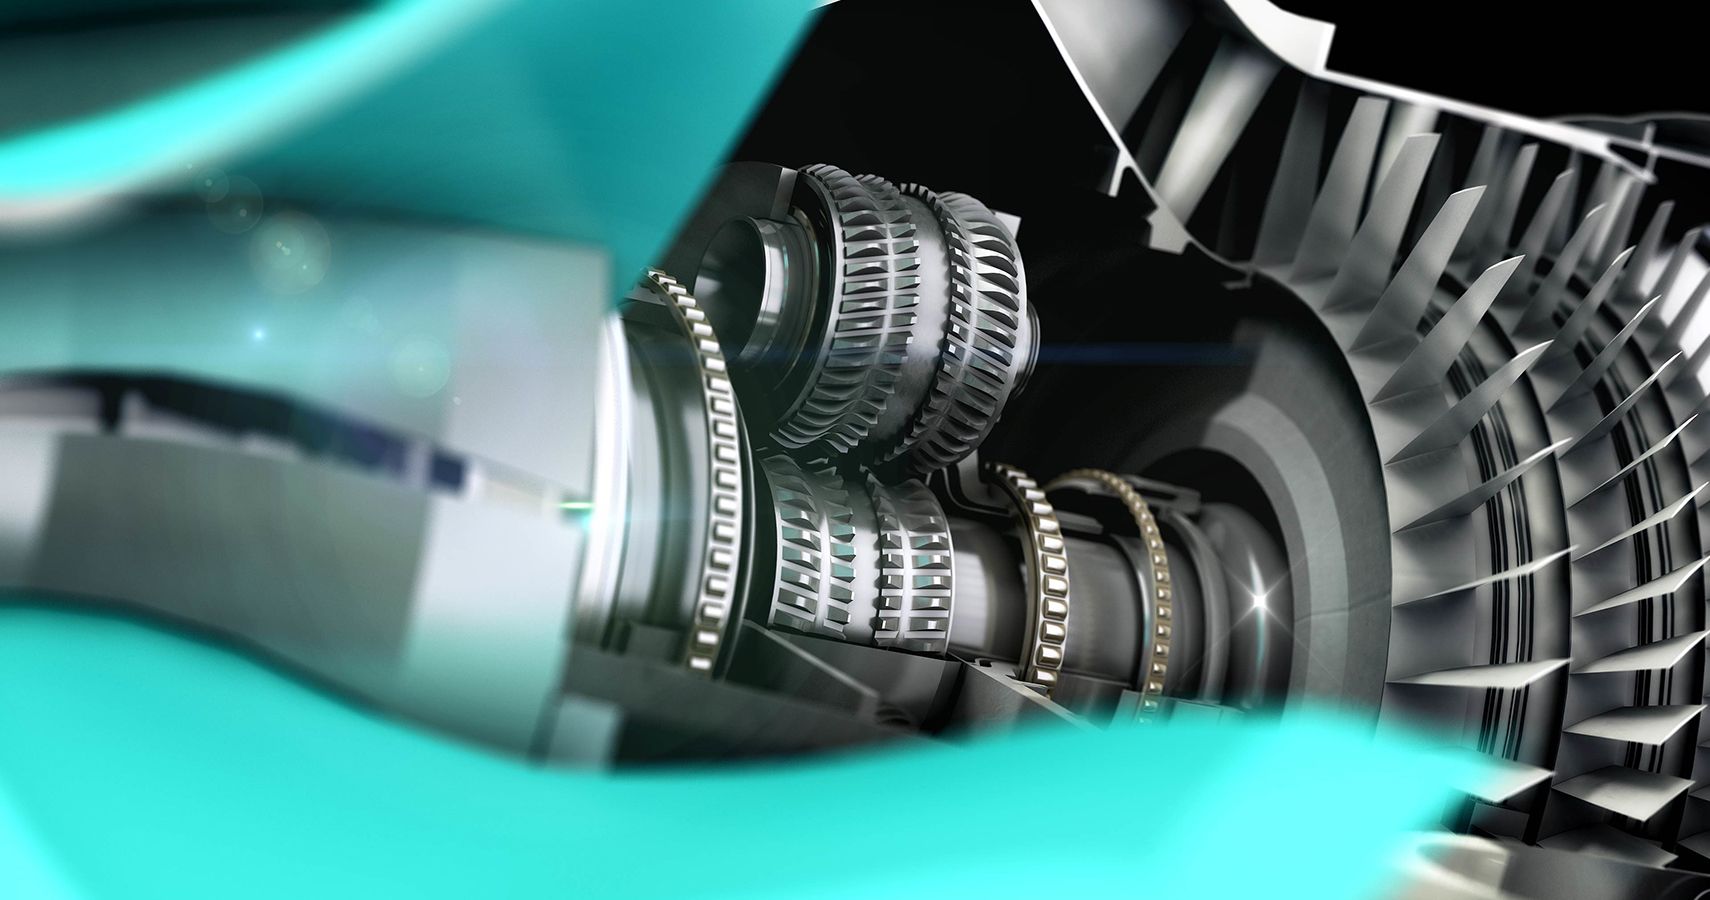 Rolls-Royce Ultrafan gearbox